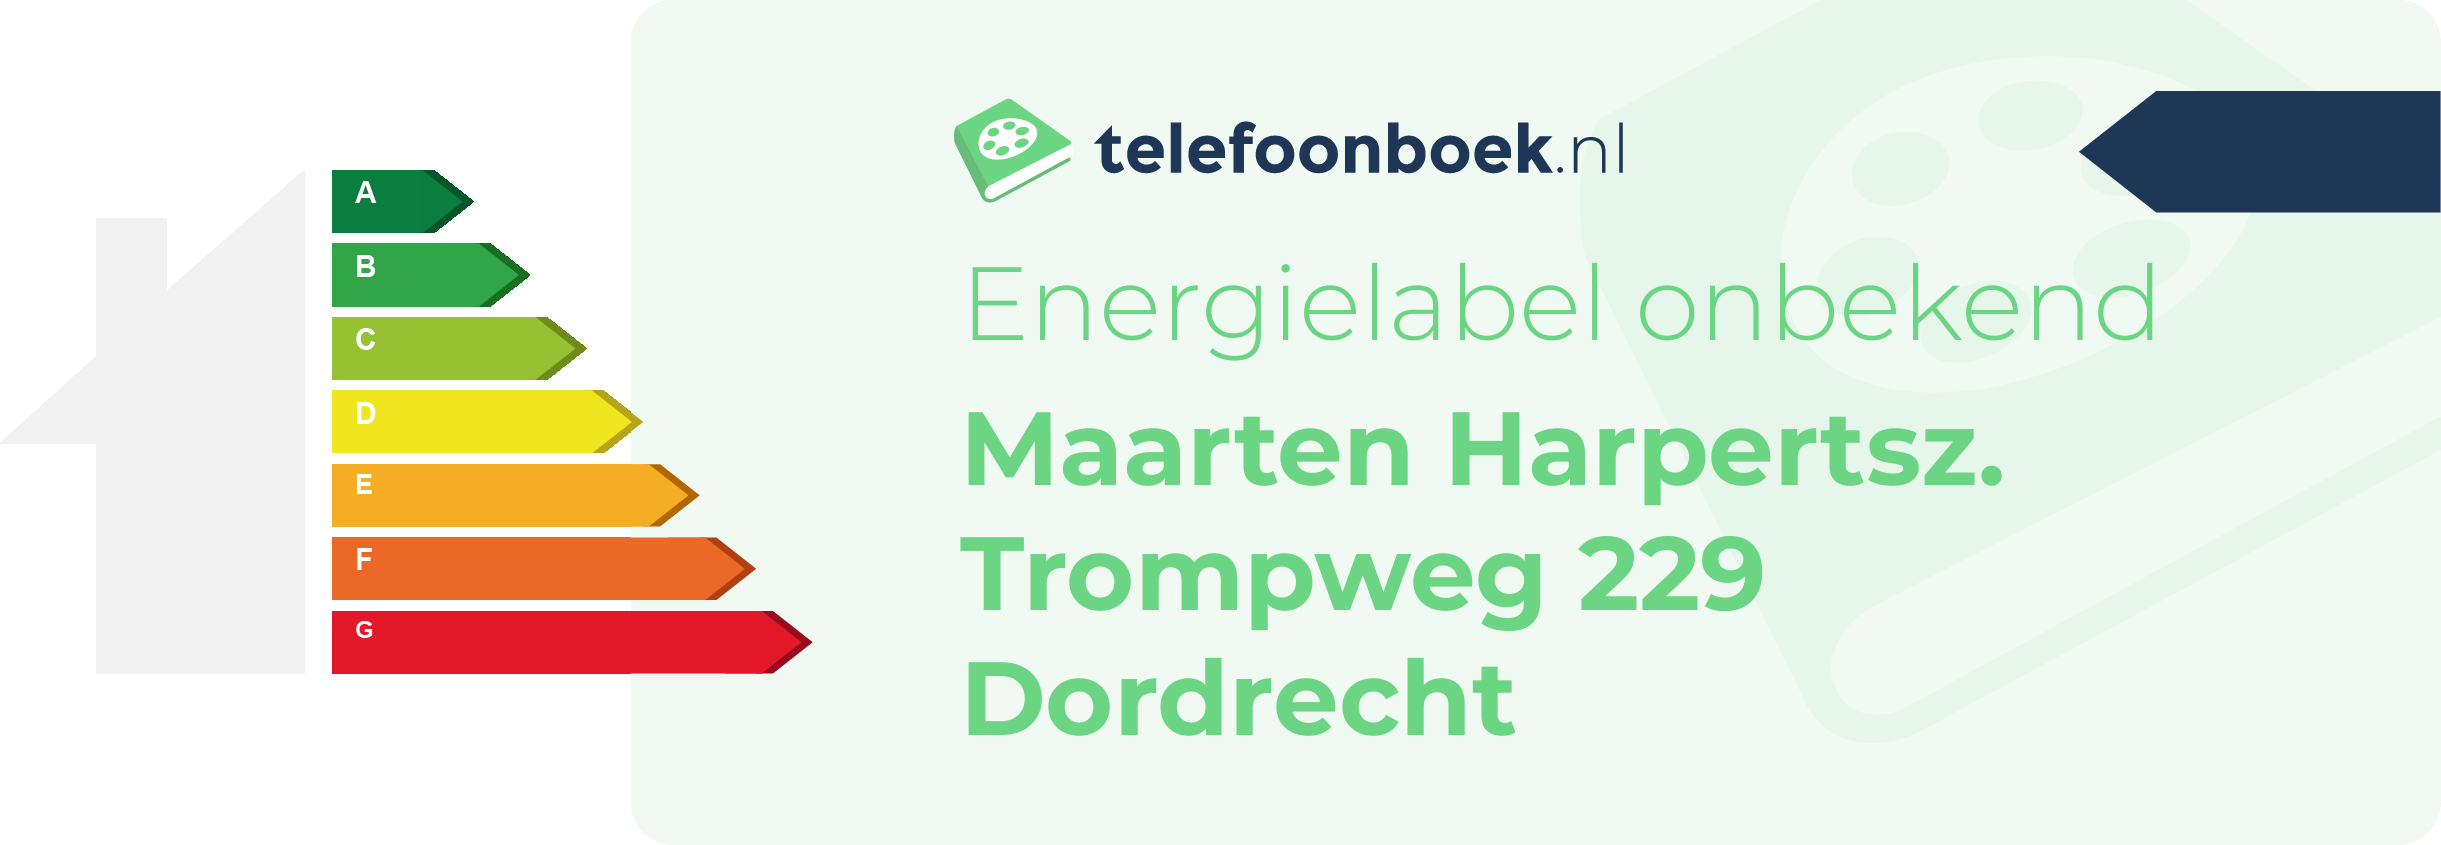 Energielabel Maarten Harpertsz. Trompweg 229 Dordrecht